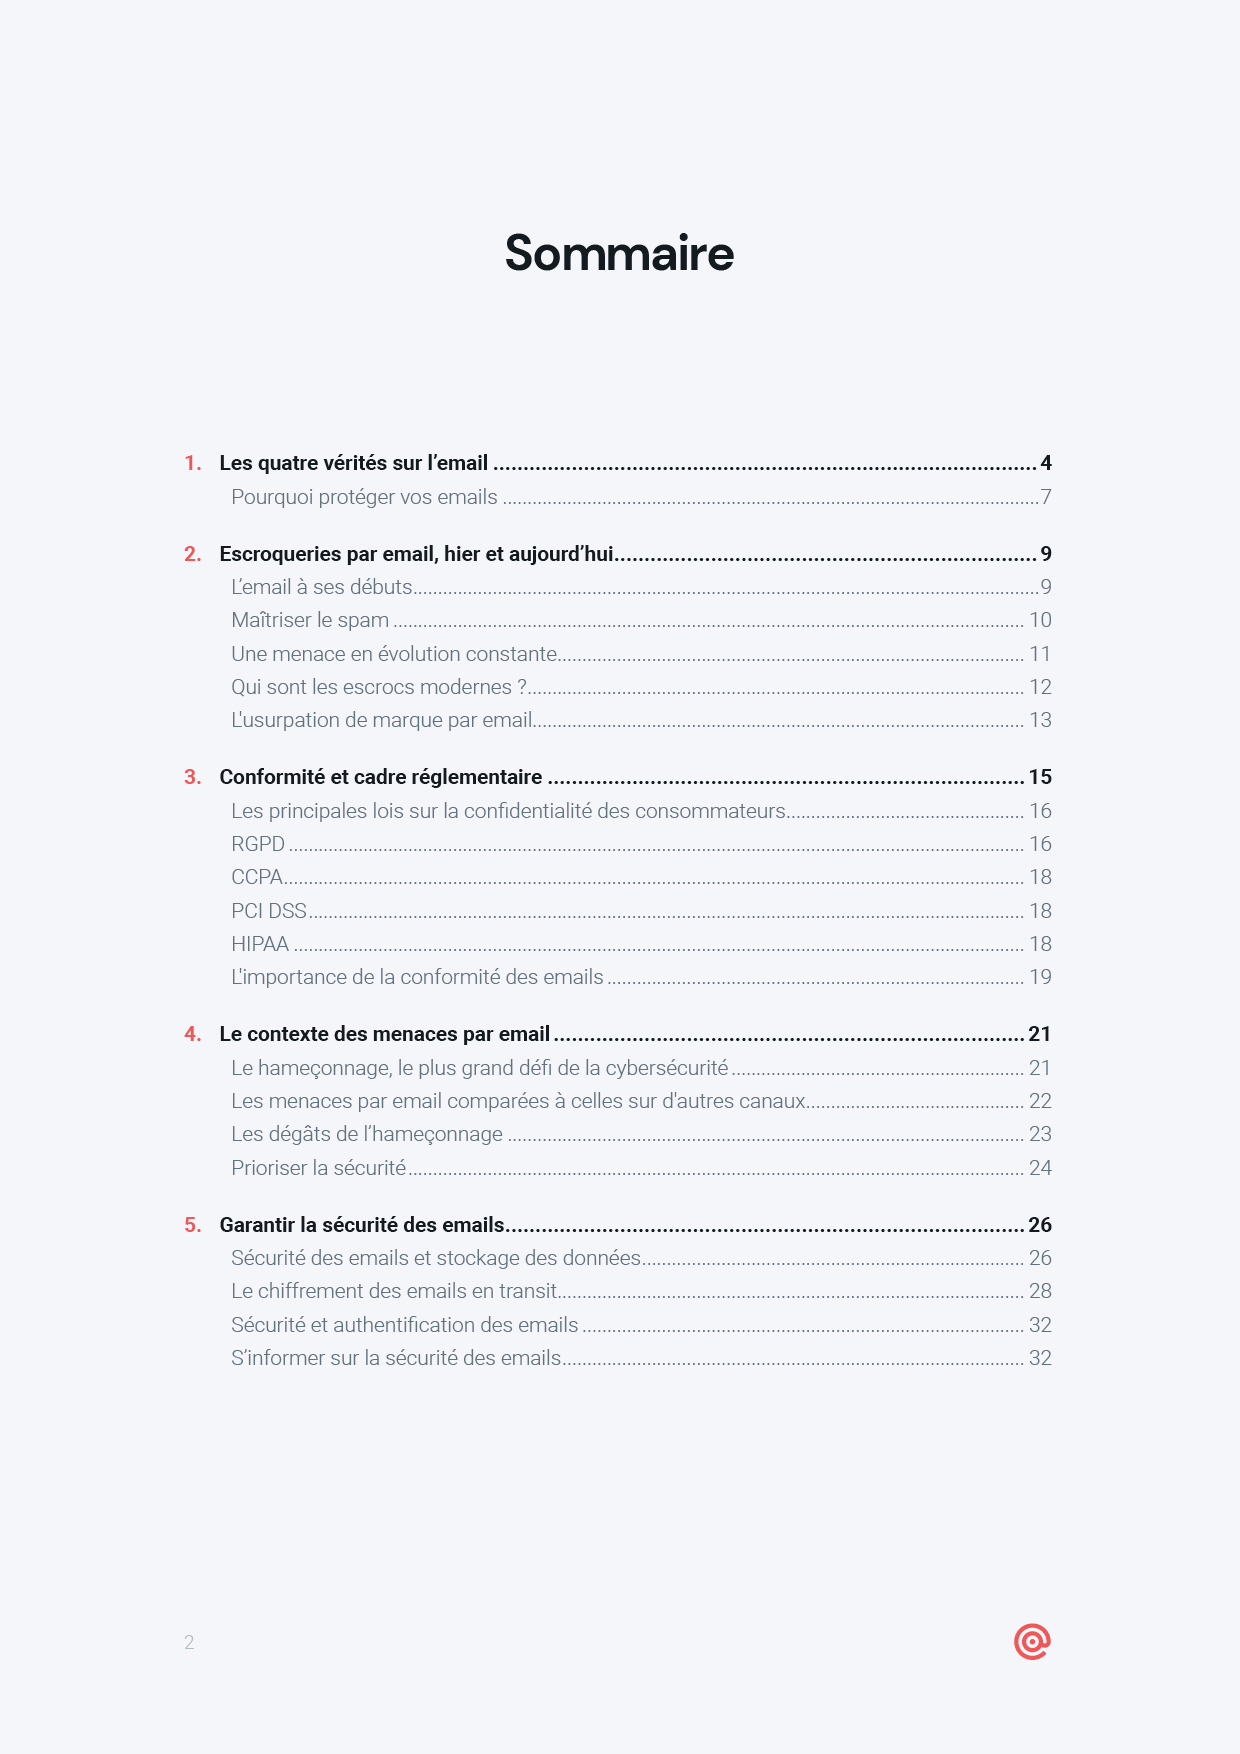 Miniature du sommaire du guide de Mailgun sur la sécurité et la conformité des emails